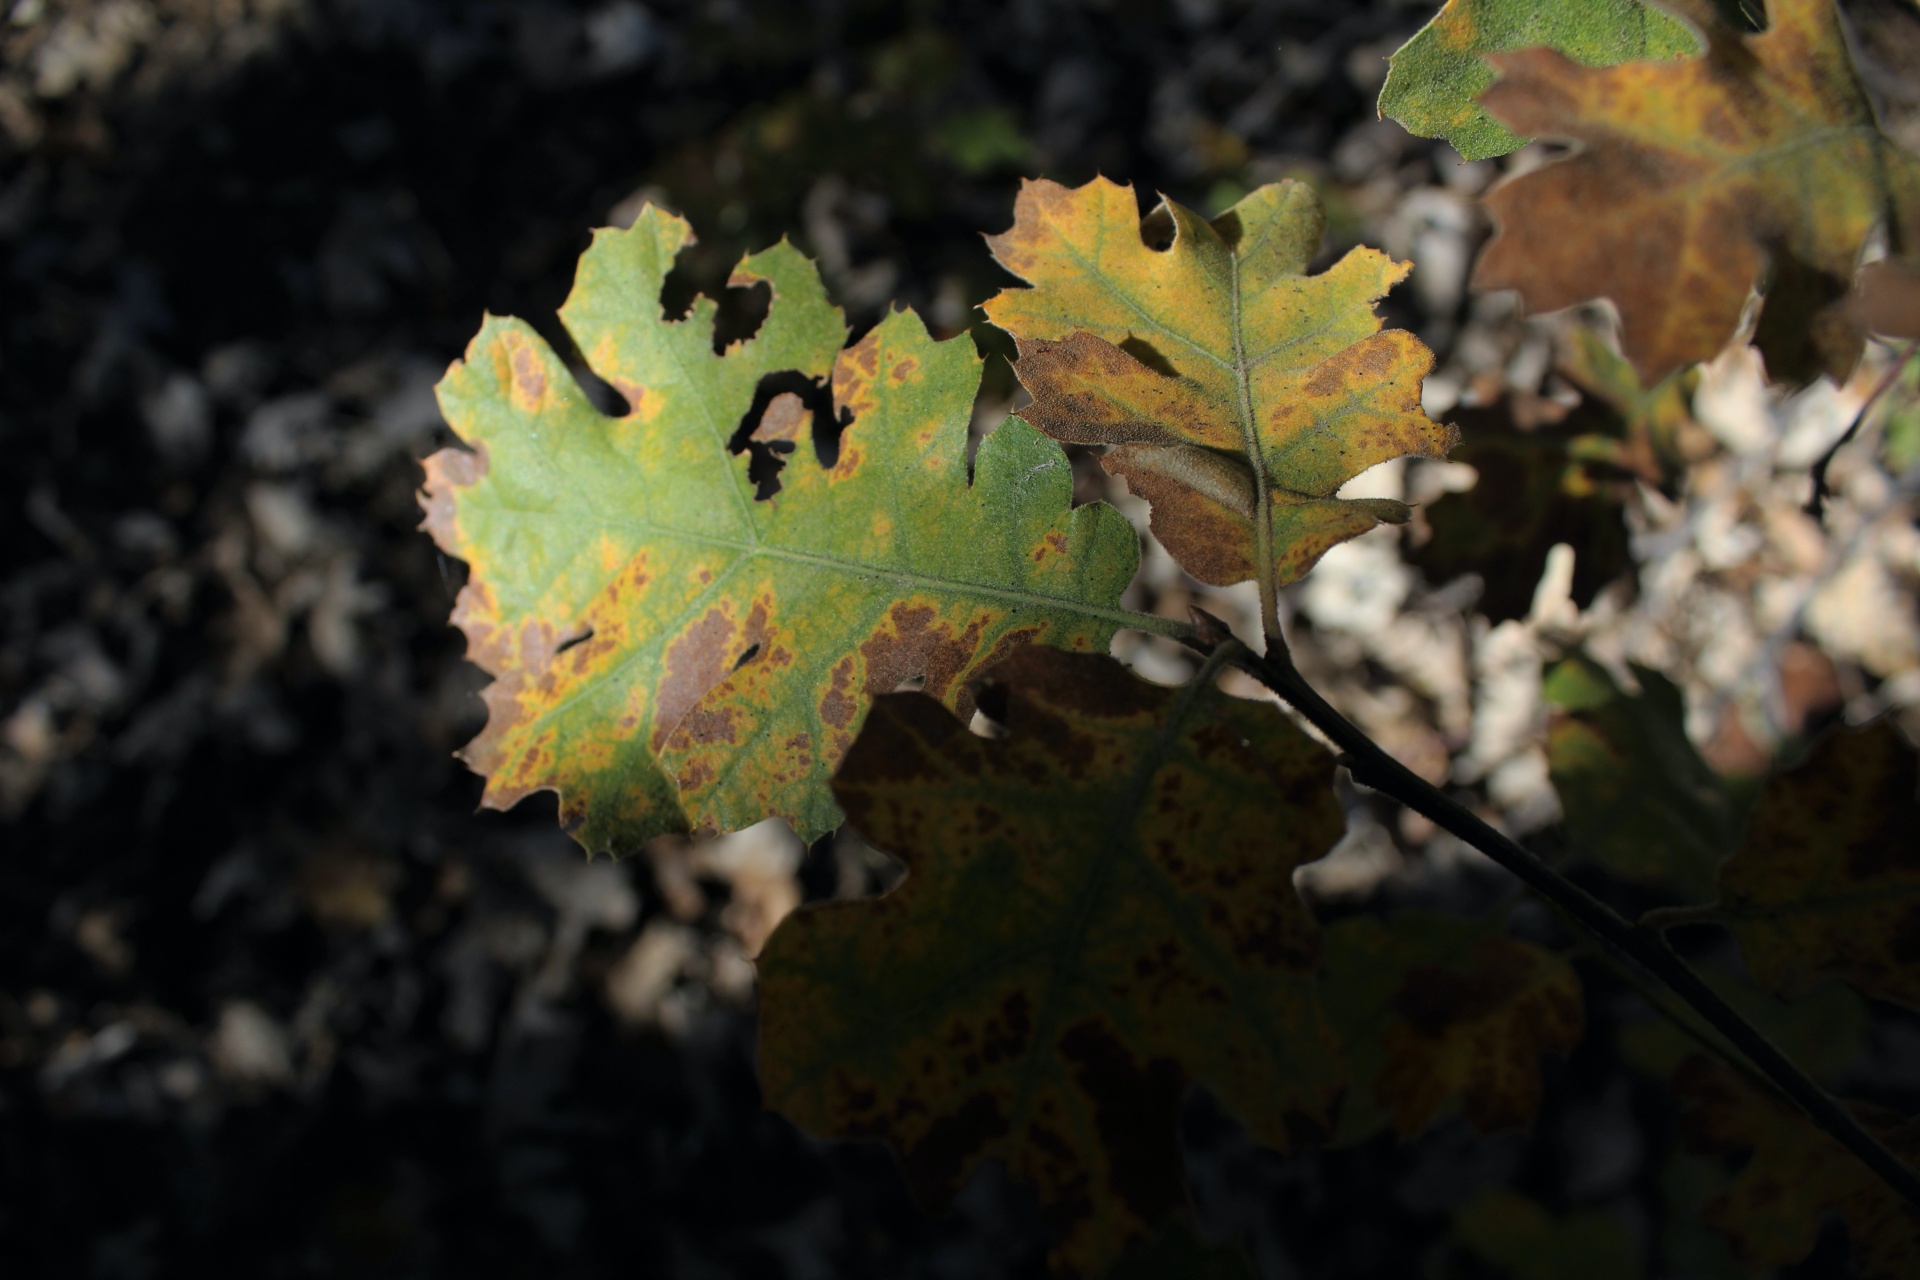 Oak wilt tree disease on leaves